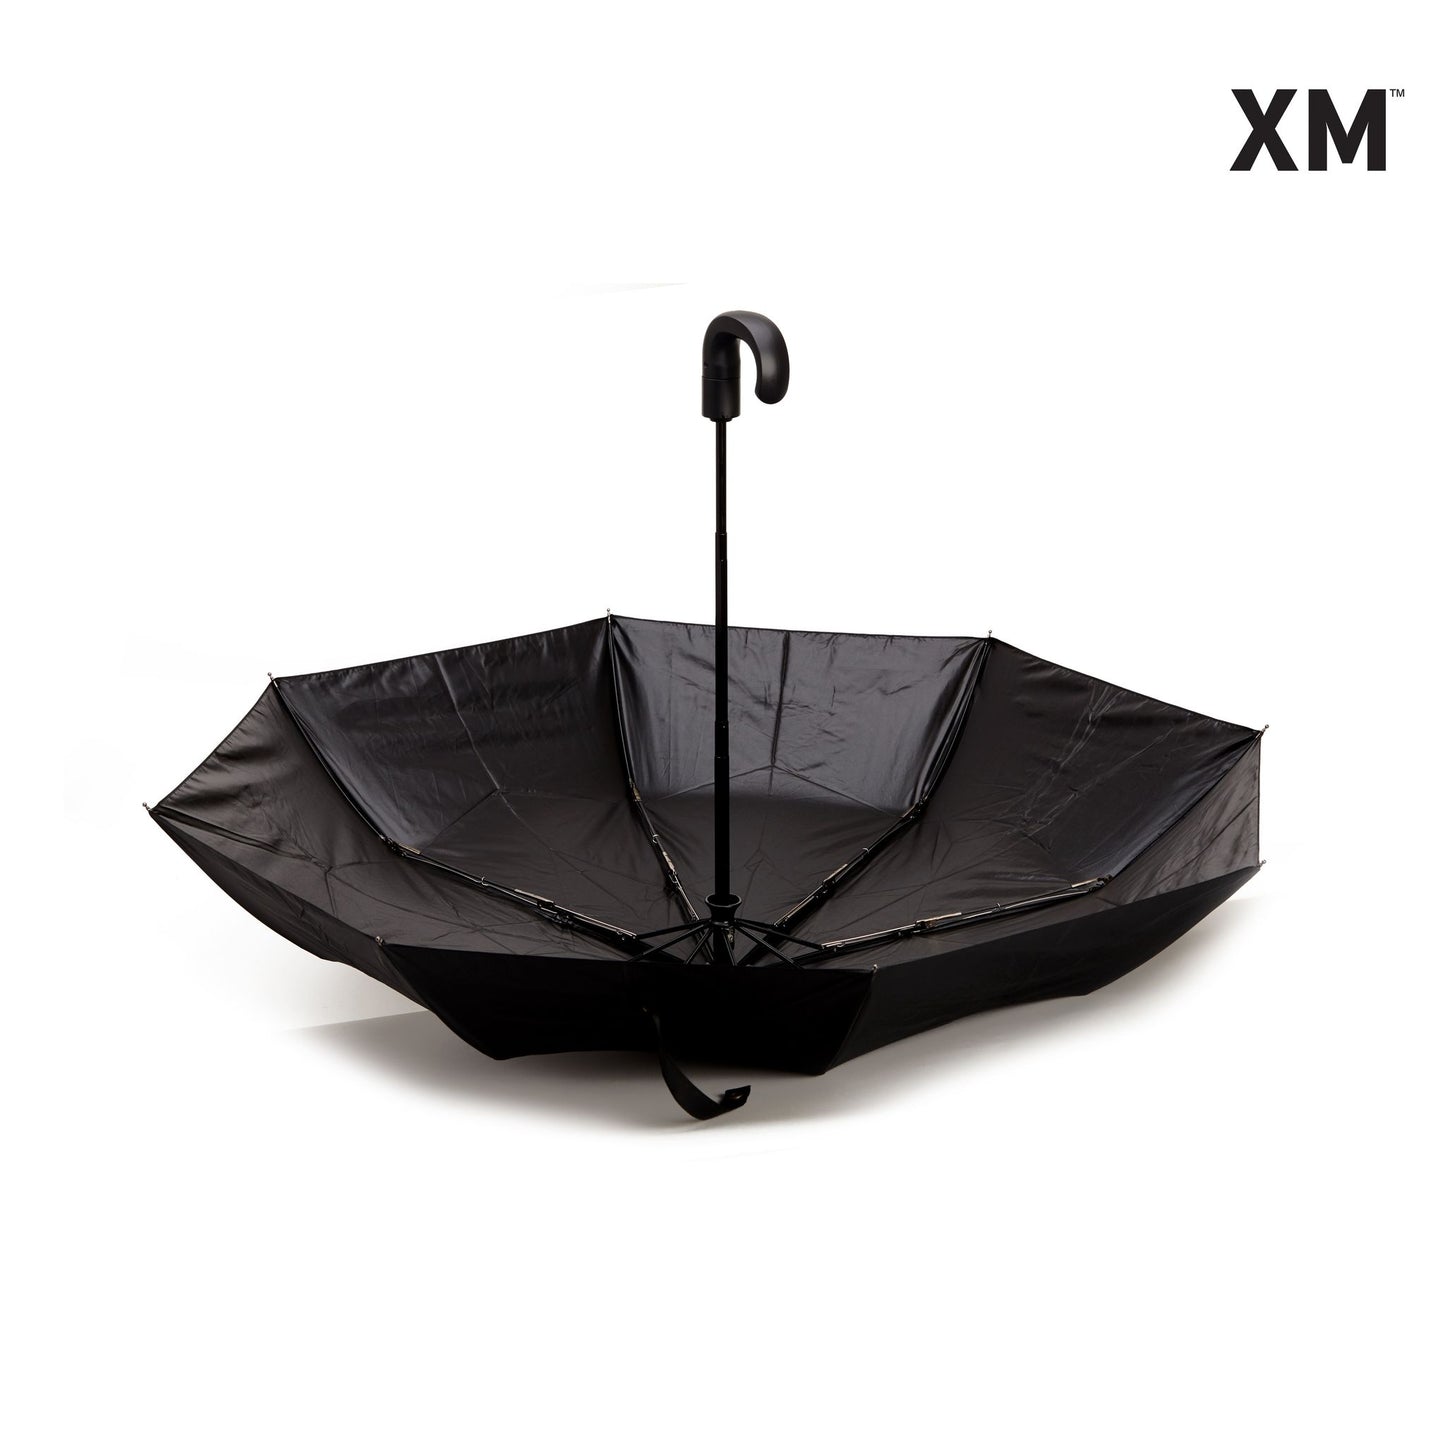 XM Umbrella